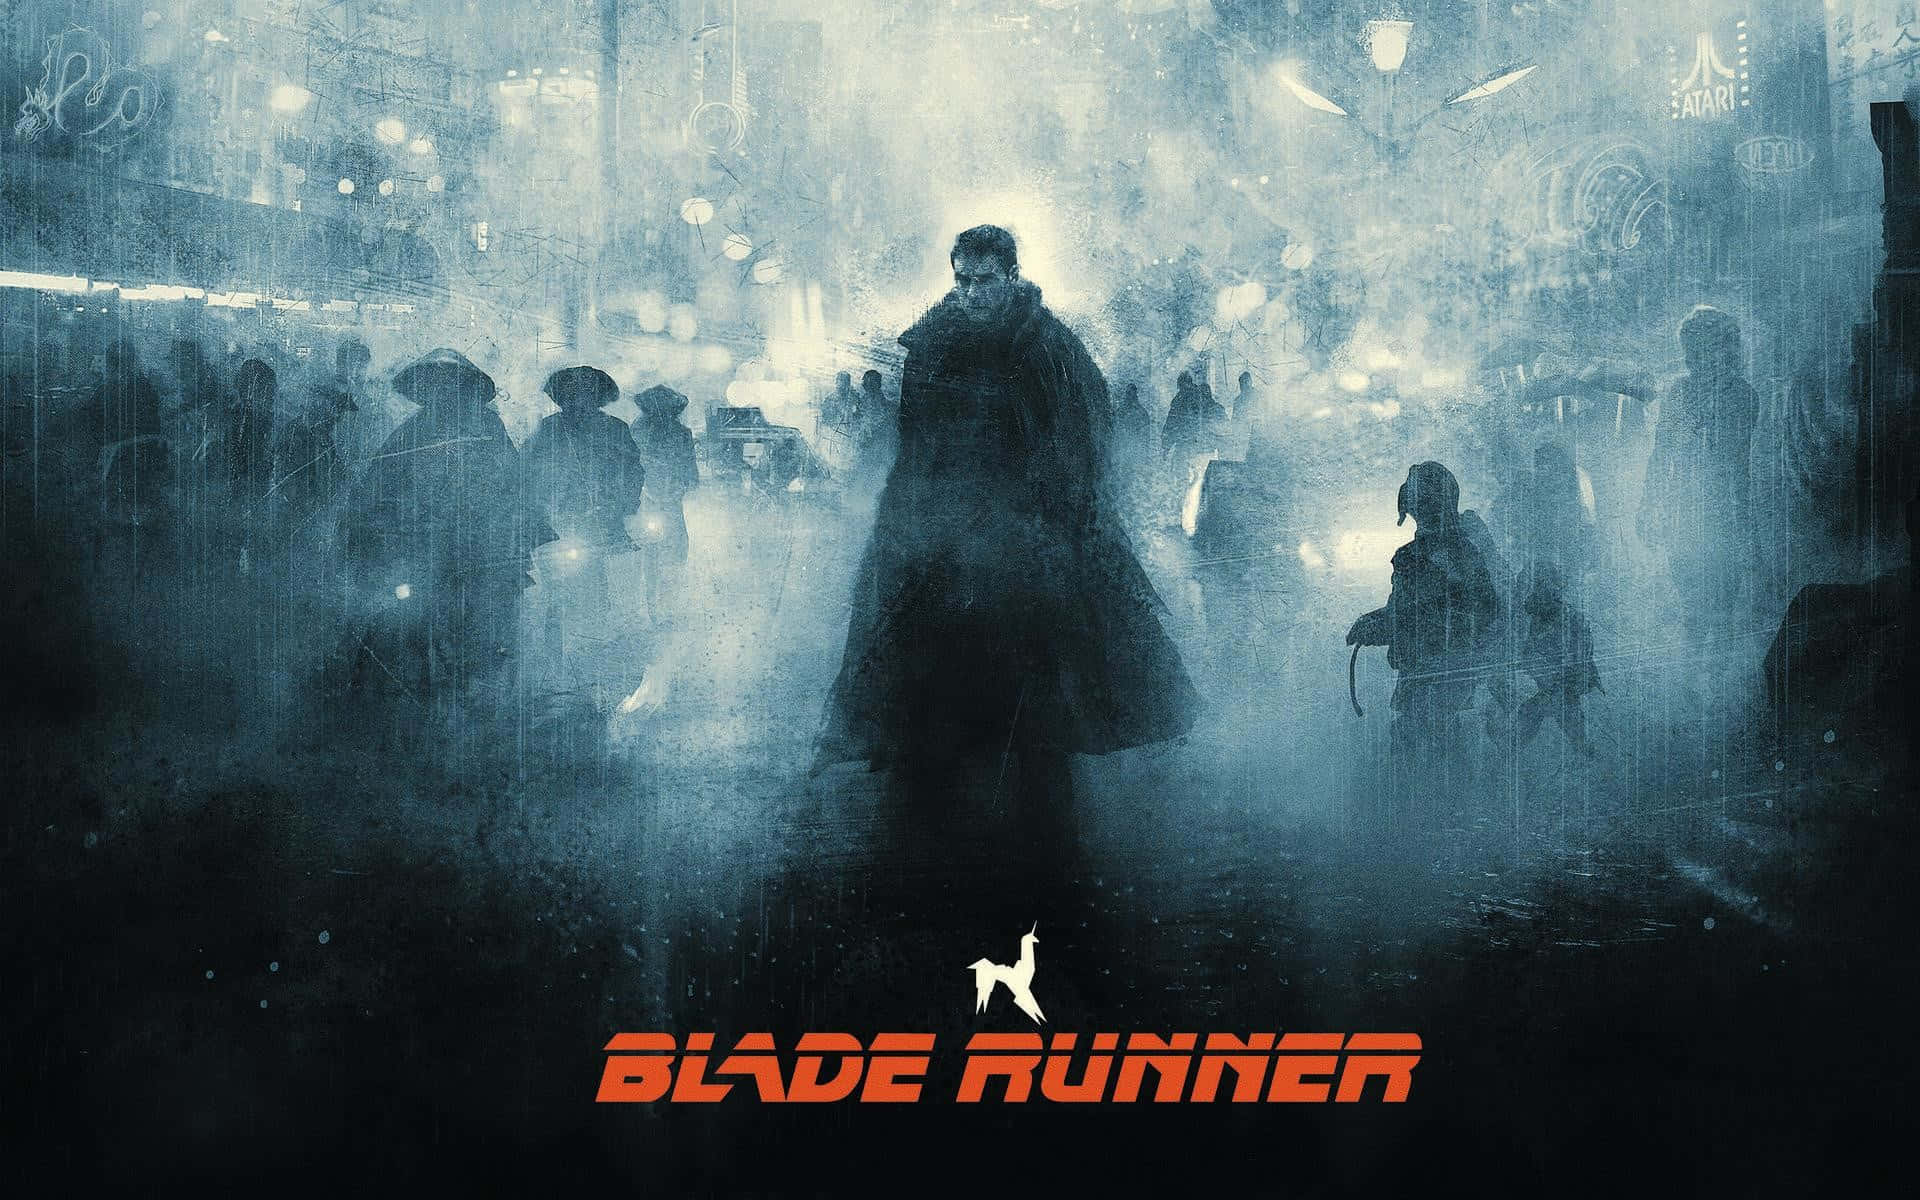 Enklassisk Scen Från Kultfilmen Blade Runner Från 1982